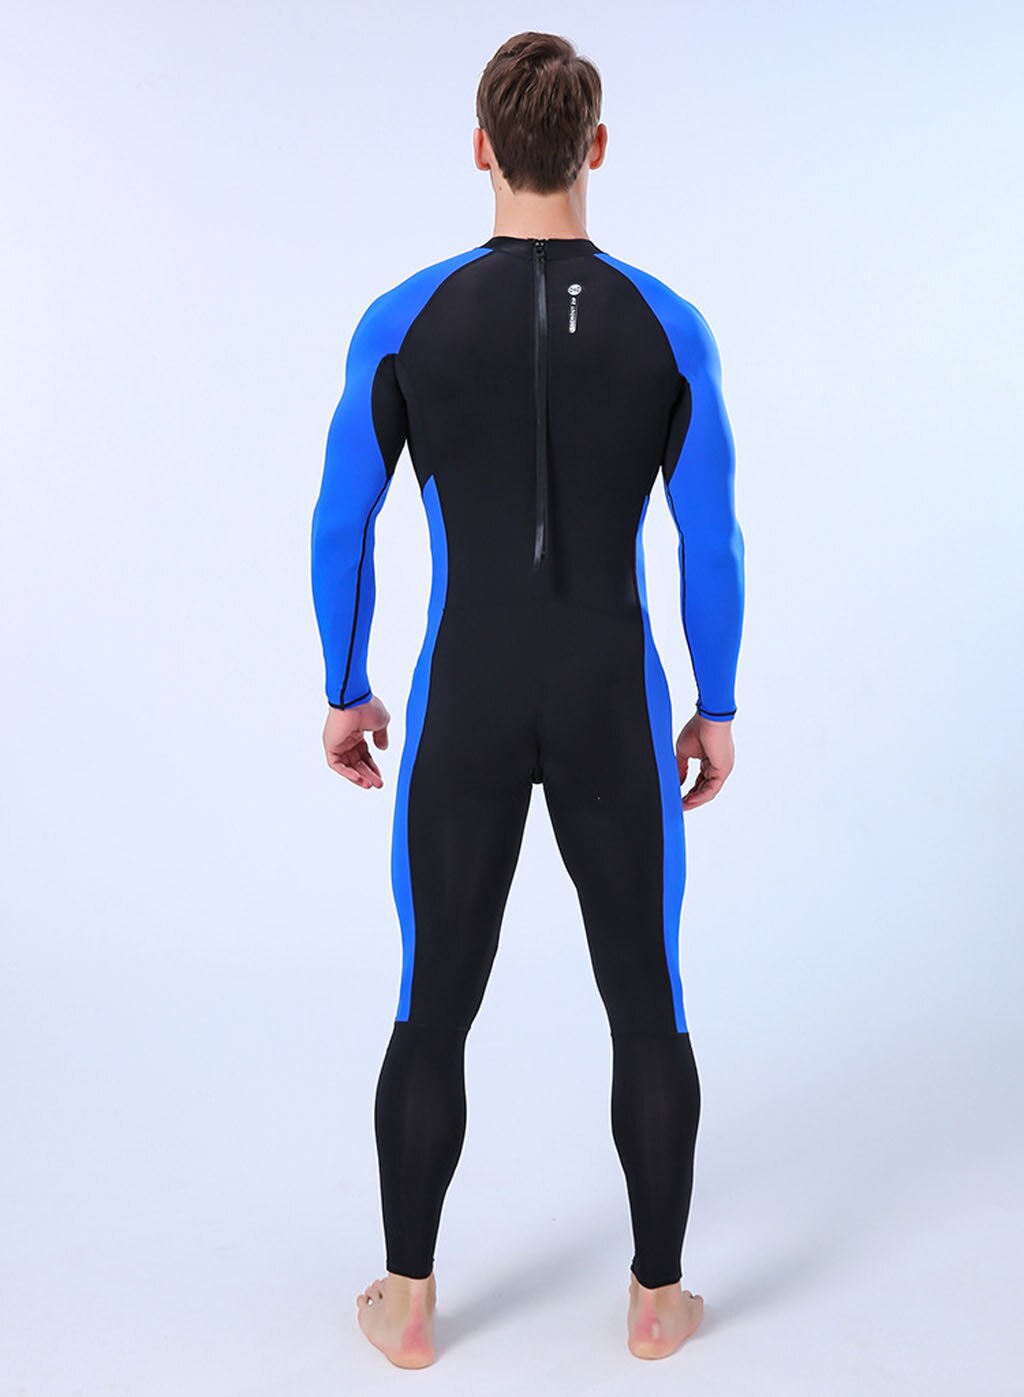 Männer Tauchen Anzug Neoprenanzug Full Body Langarm Badeanzug Surfen TauchanzugA 